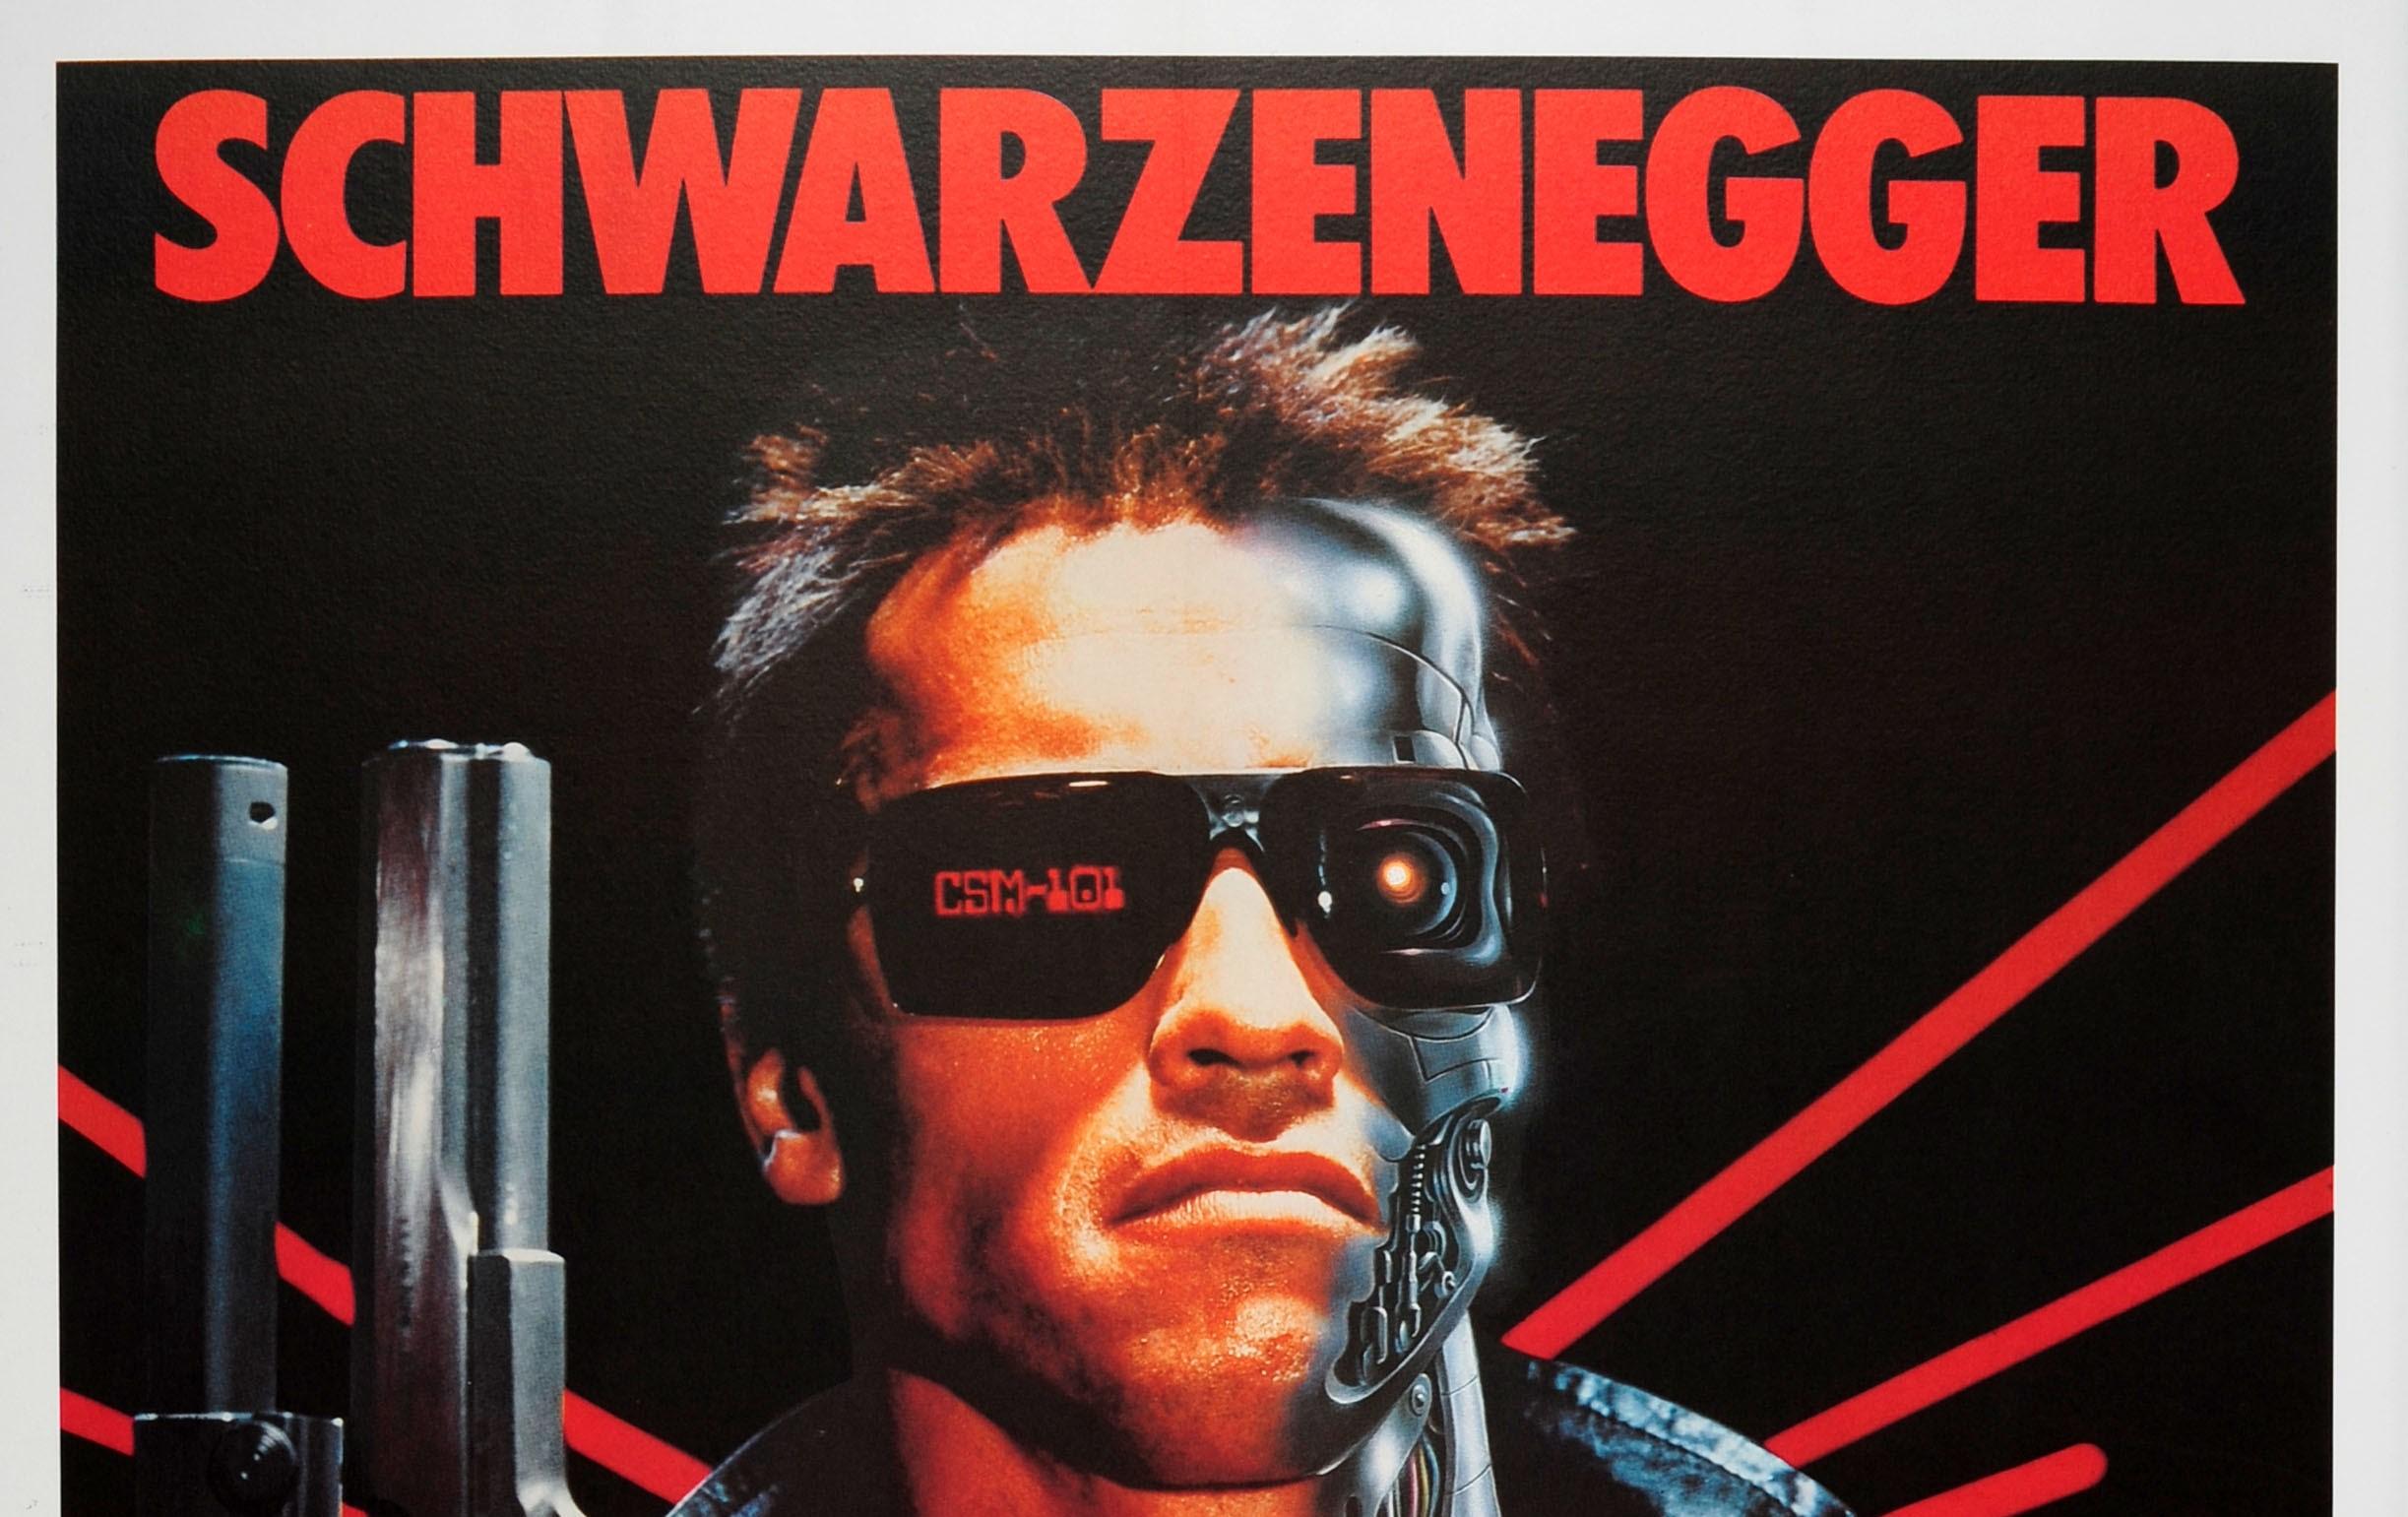 Affiche vintage originale pour la sortie en Italie en 1985 du film de science-fiction américain réalisé par James Cameron - The Terminator - avec Arnold Schwarzenegger dans le rôle principal, Michael Biehn, Linda Hamilton dans le rôle de Sarah